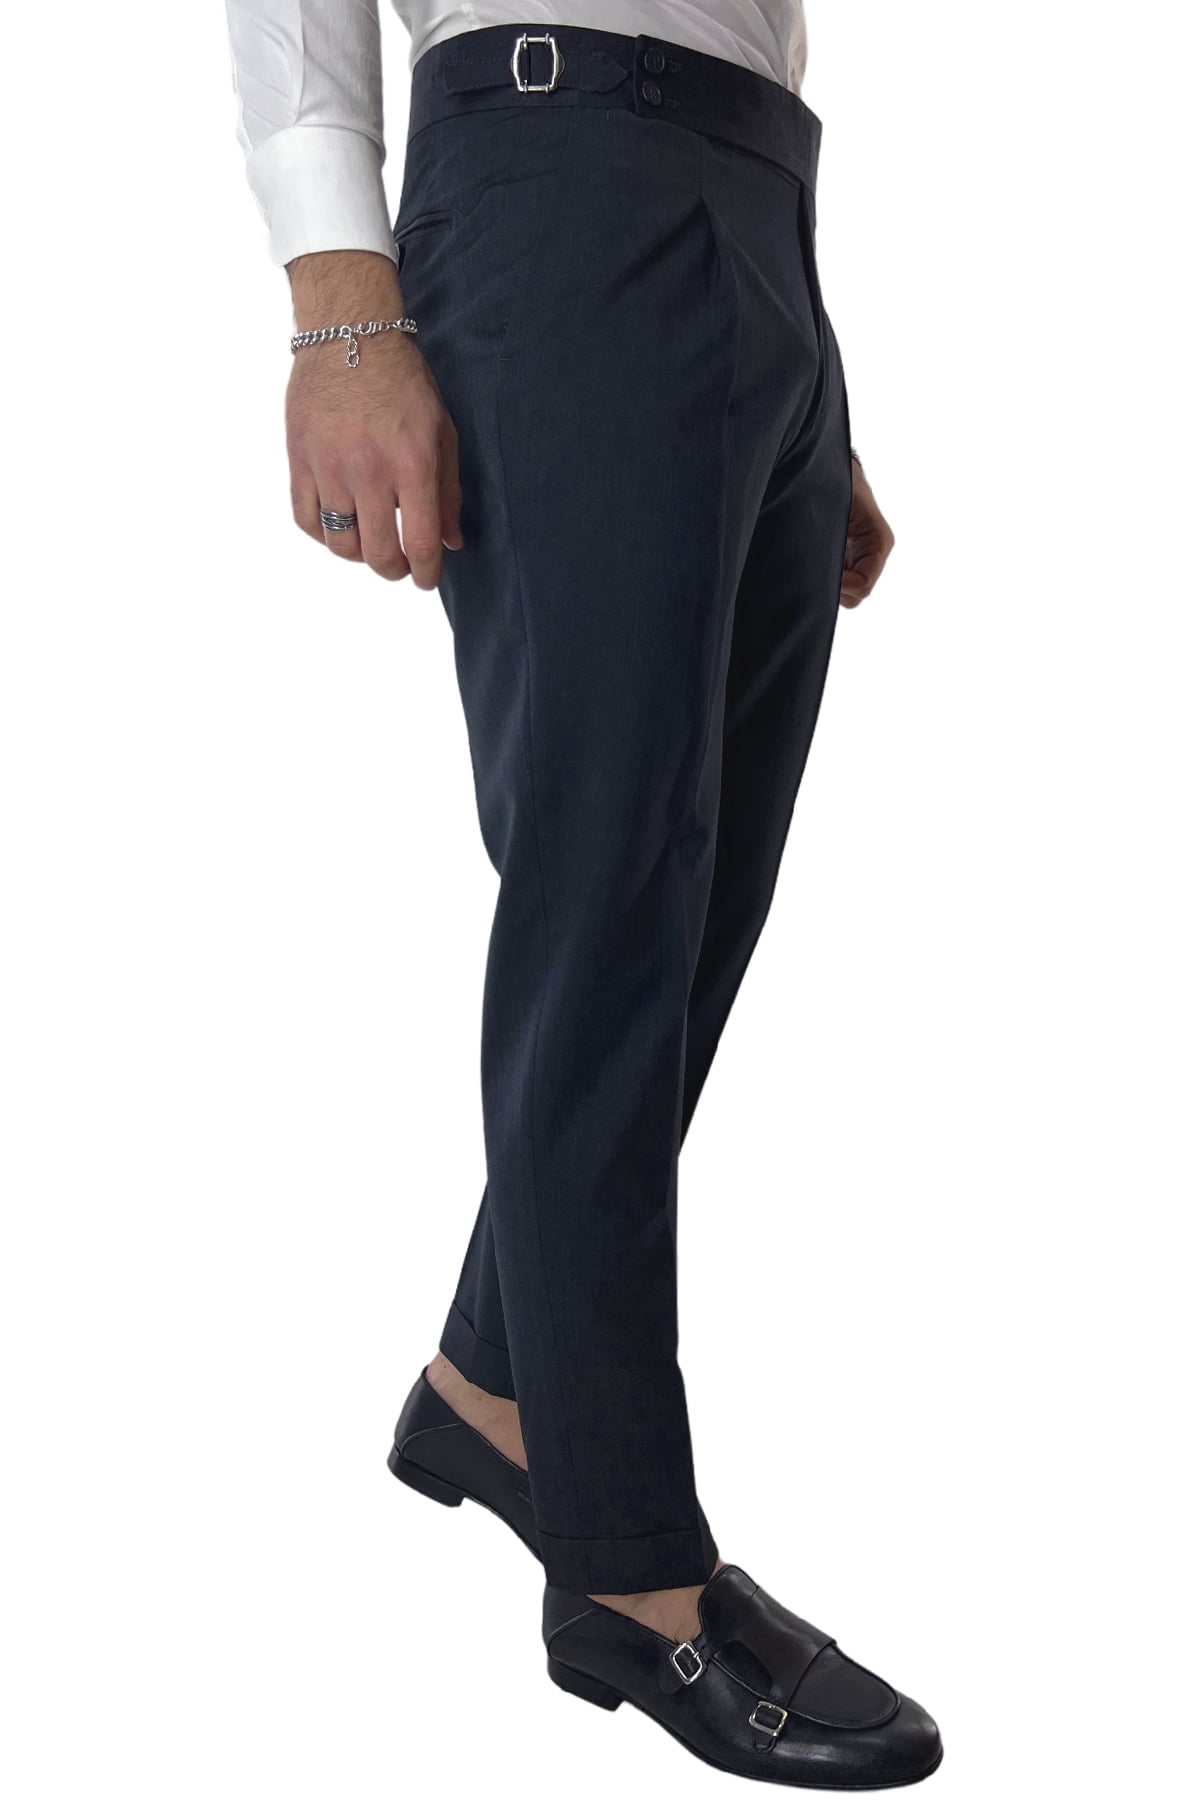 Pantalone uomo grigio scuro fresco lana Vitale Barberis vita alta con pinces fibbie laterali e risvolto 4cm